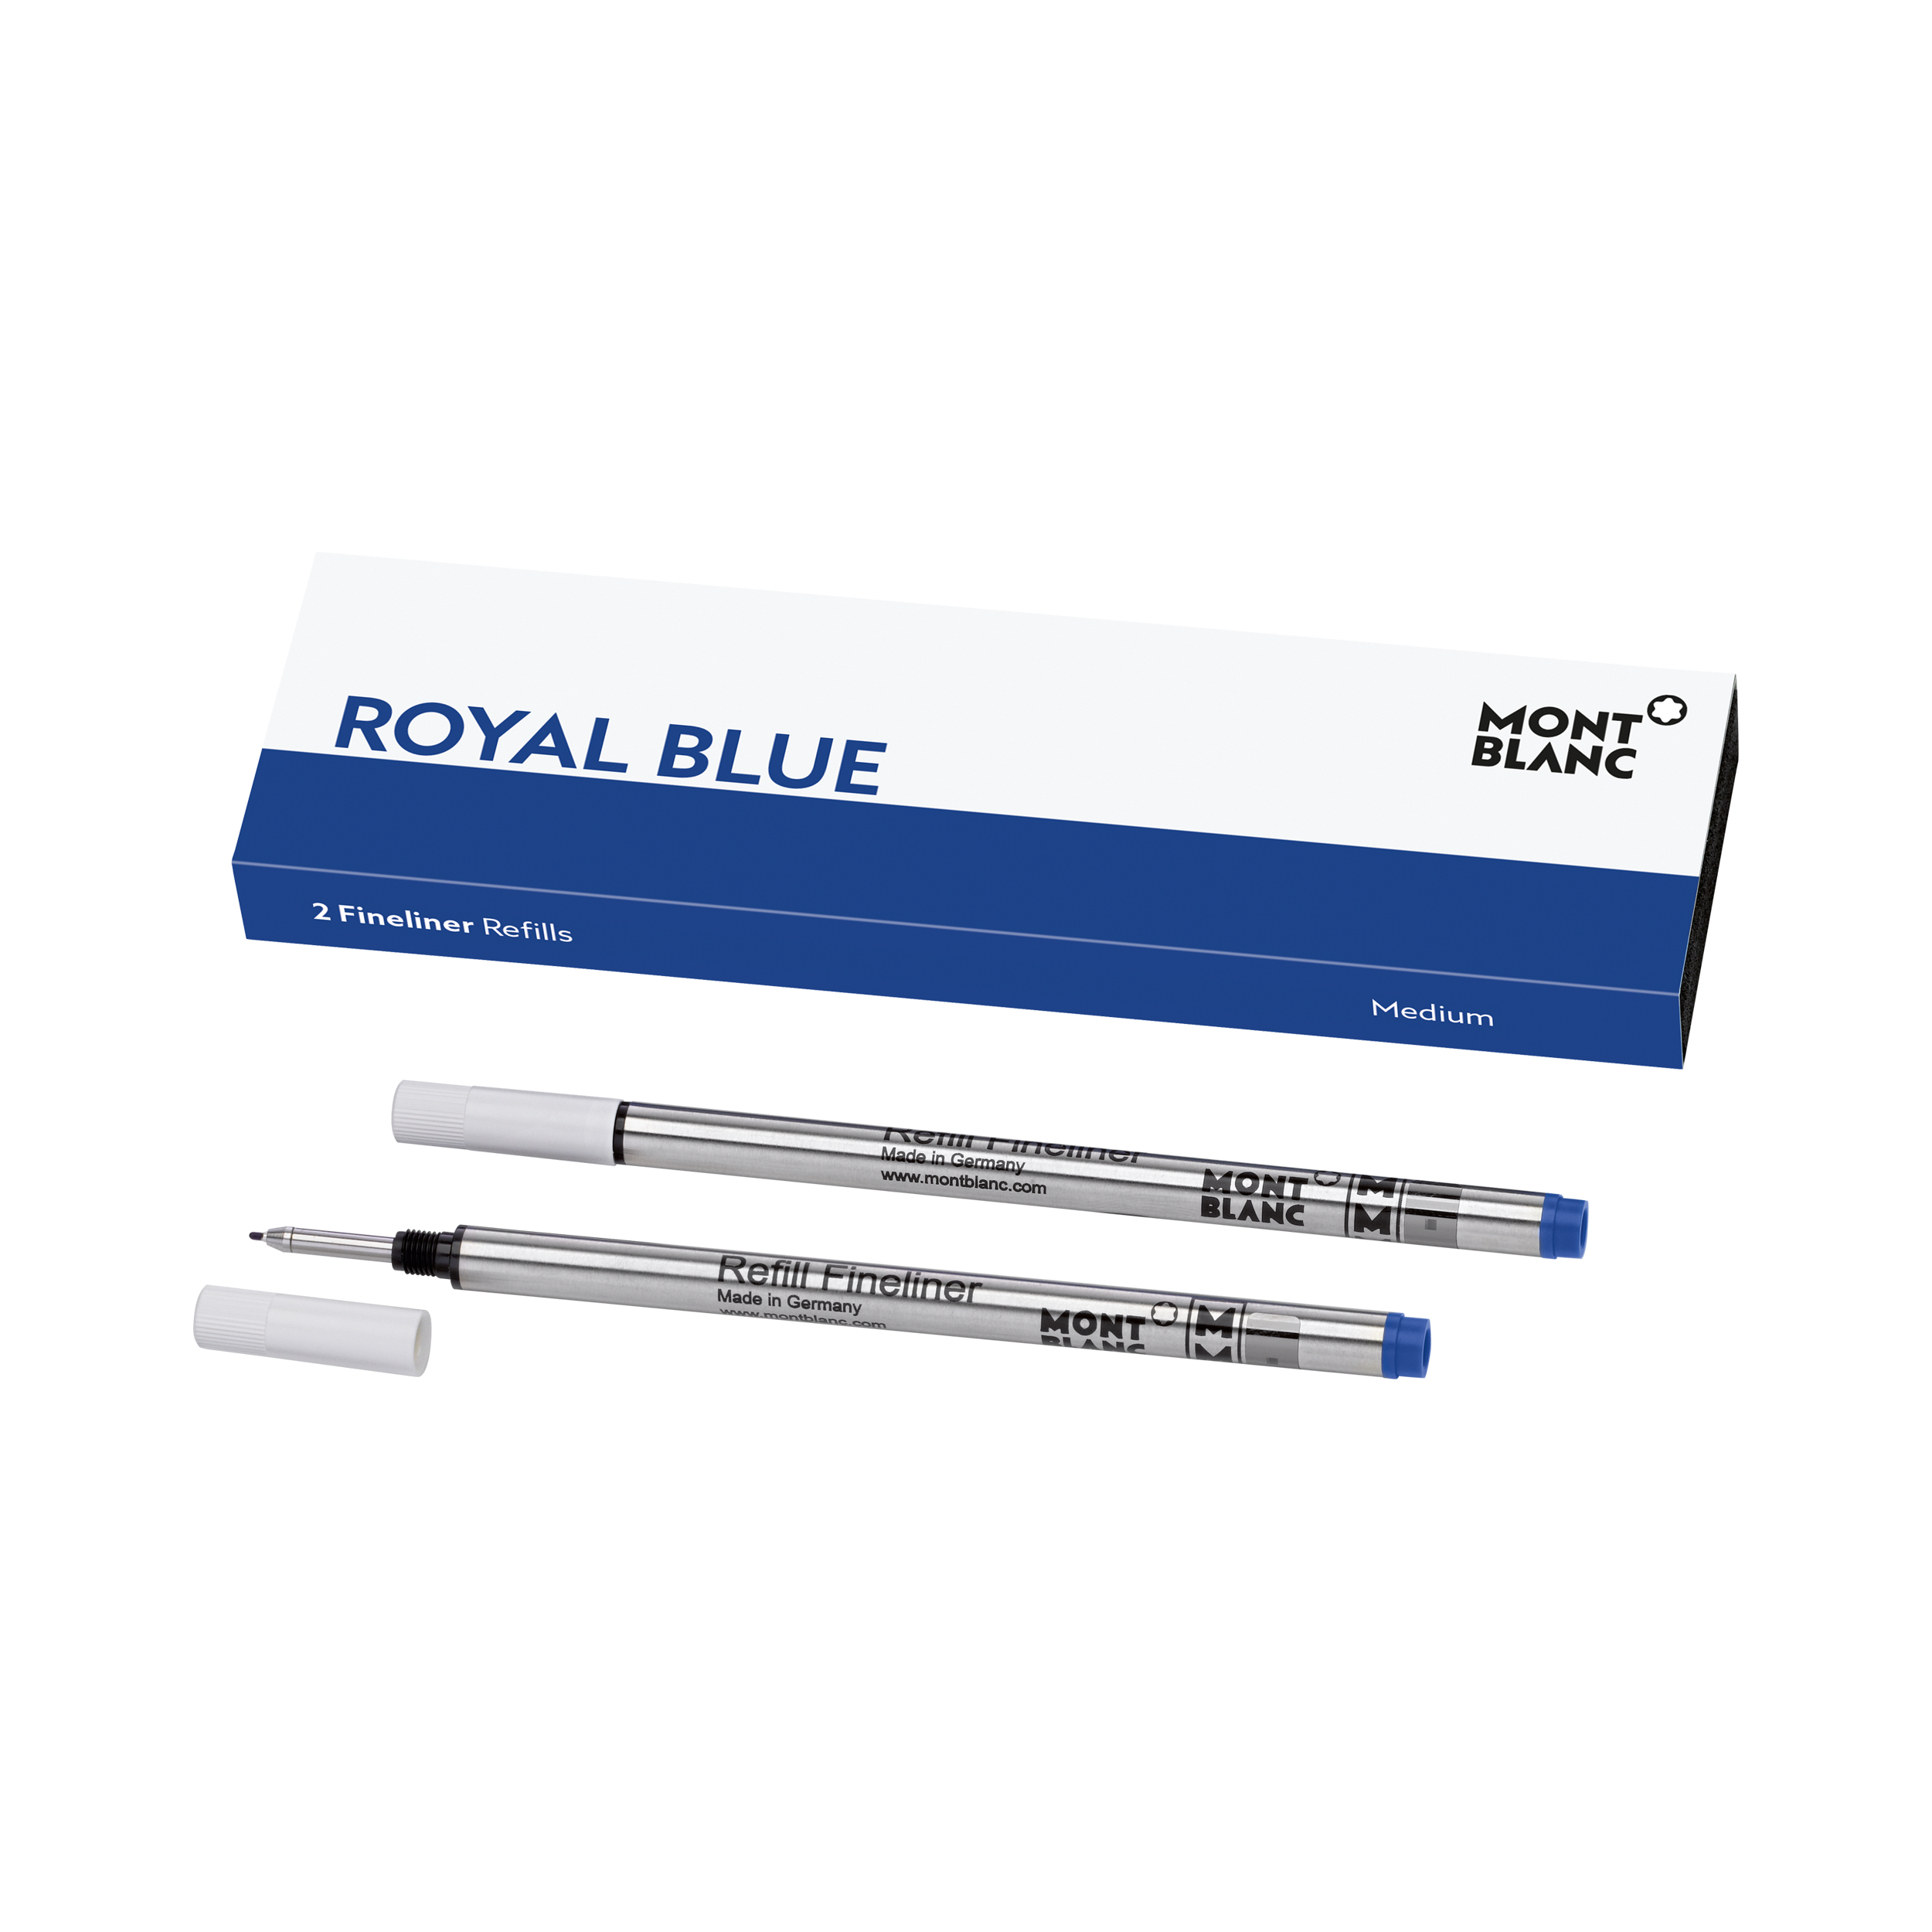 Royal Blue fineliner refills * Montblanc